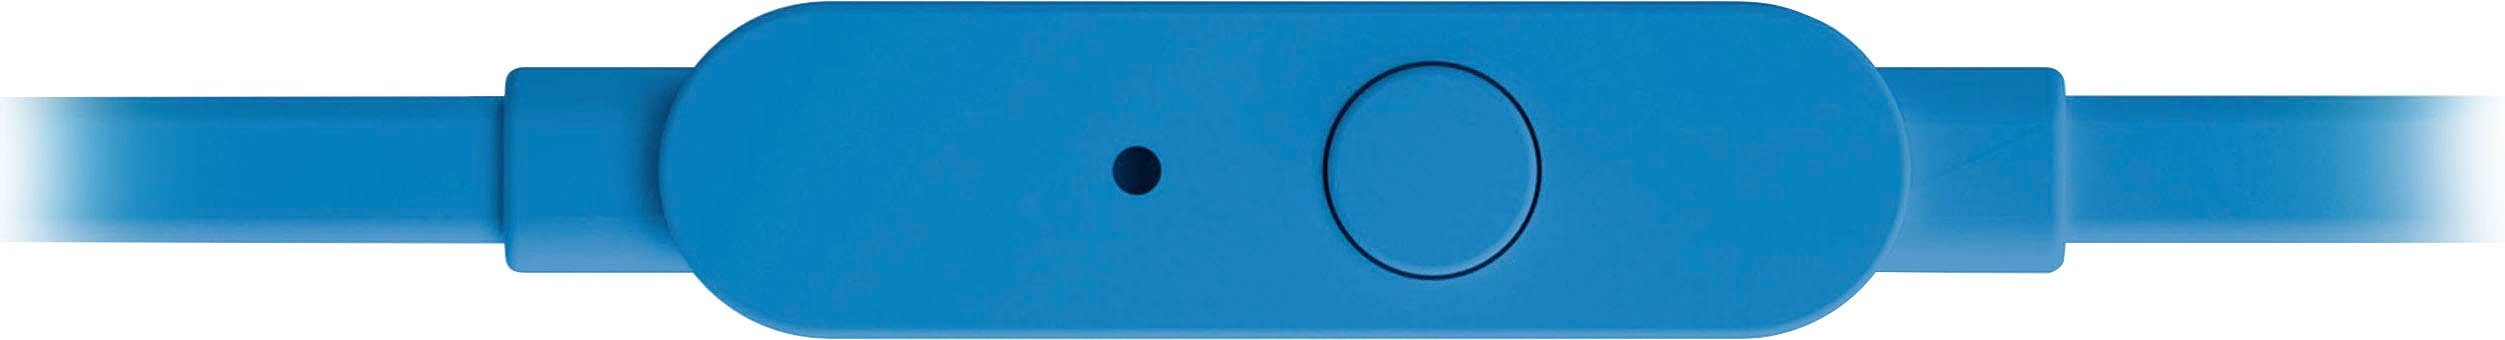 T110 blau In-Ear-Kopfhörer JBL